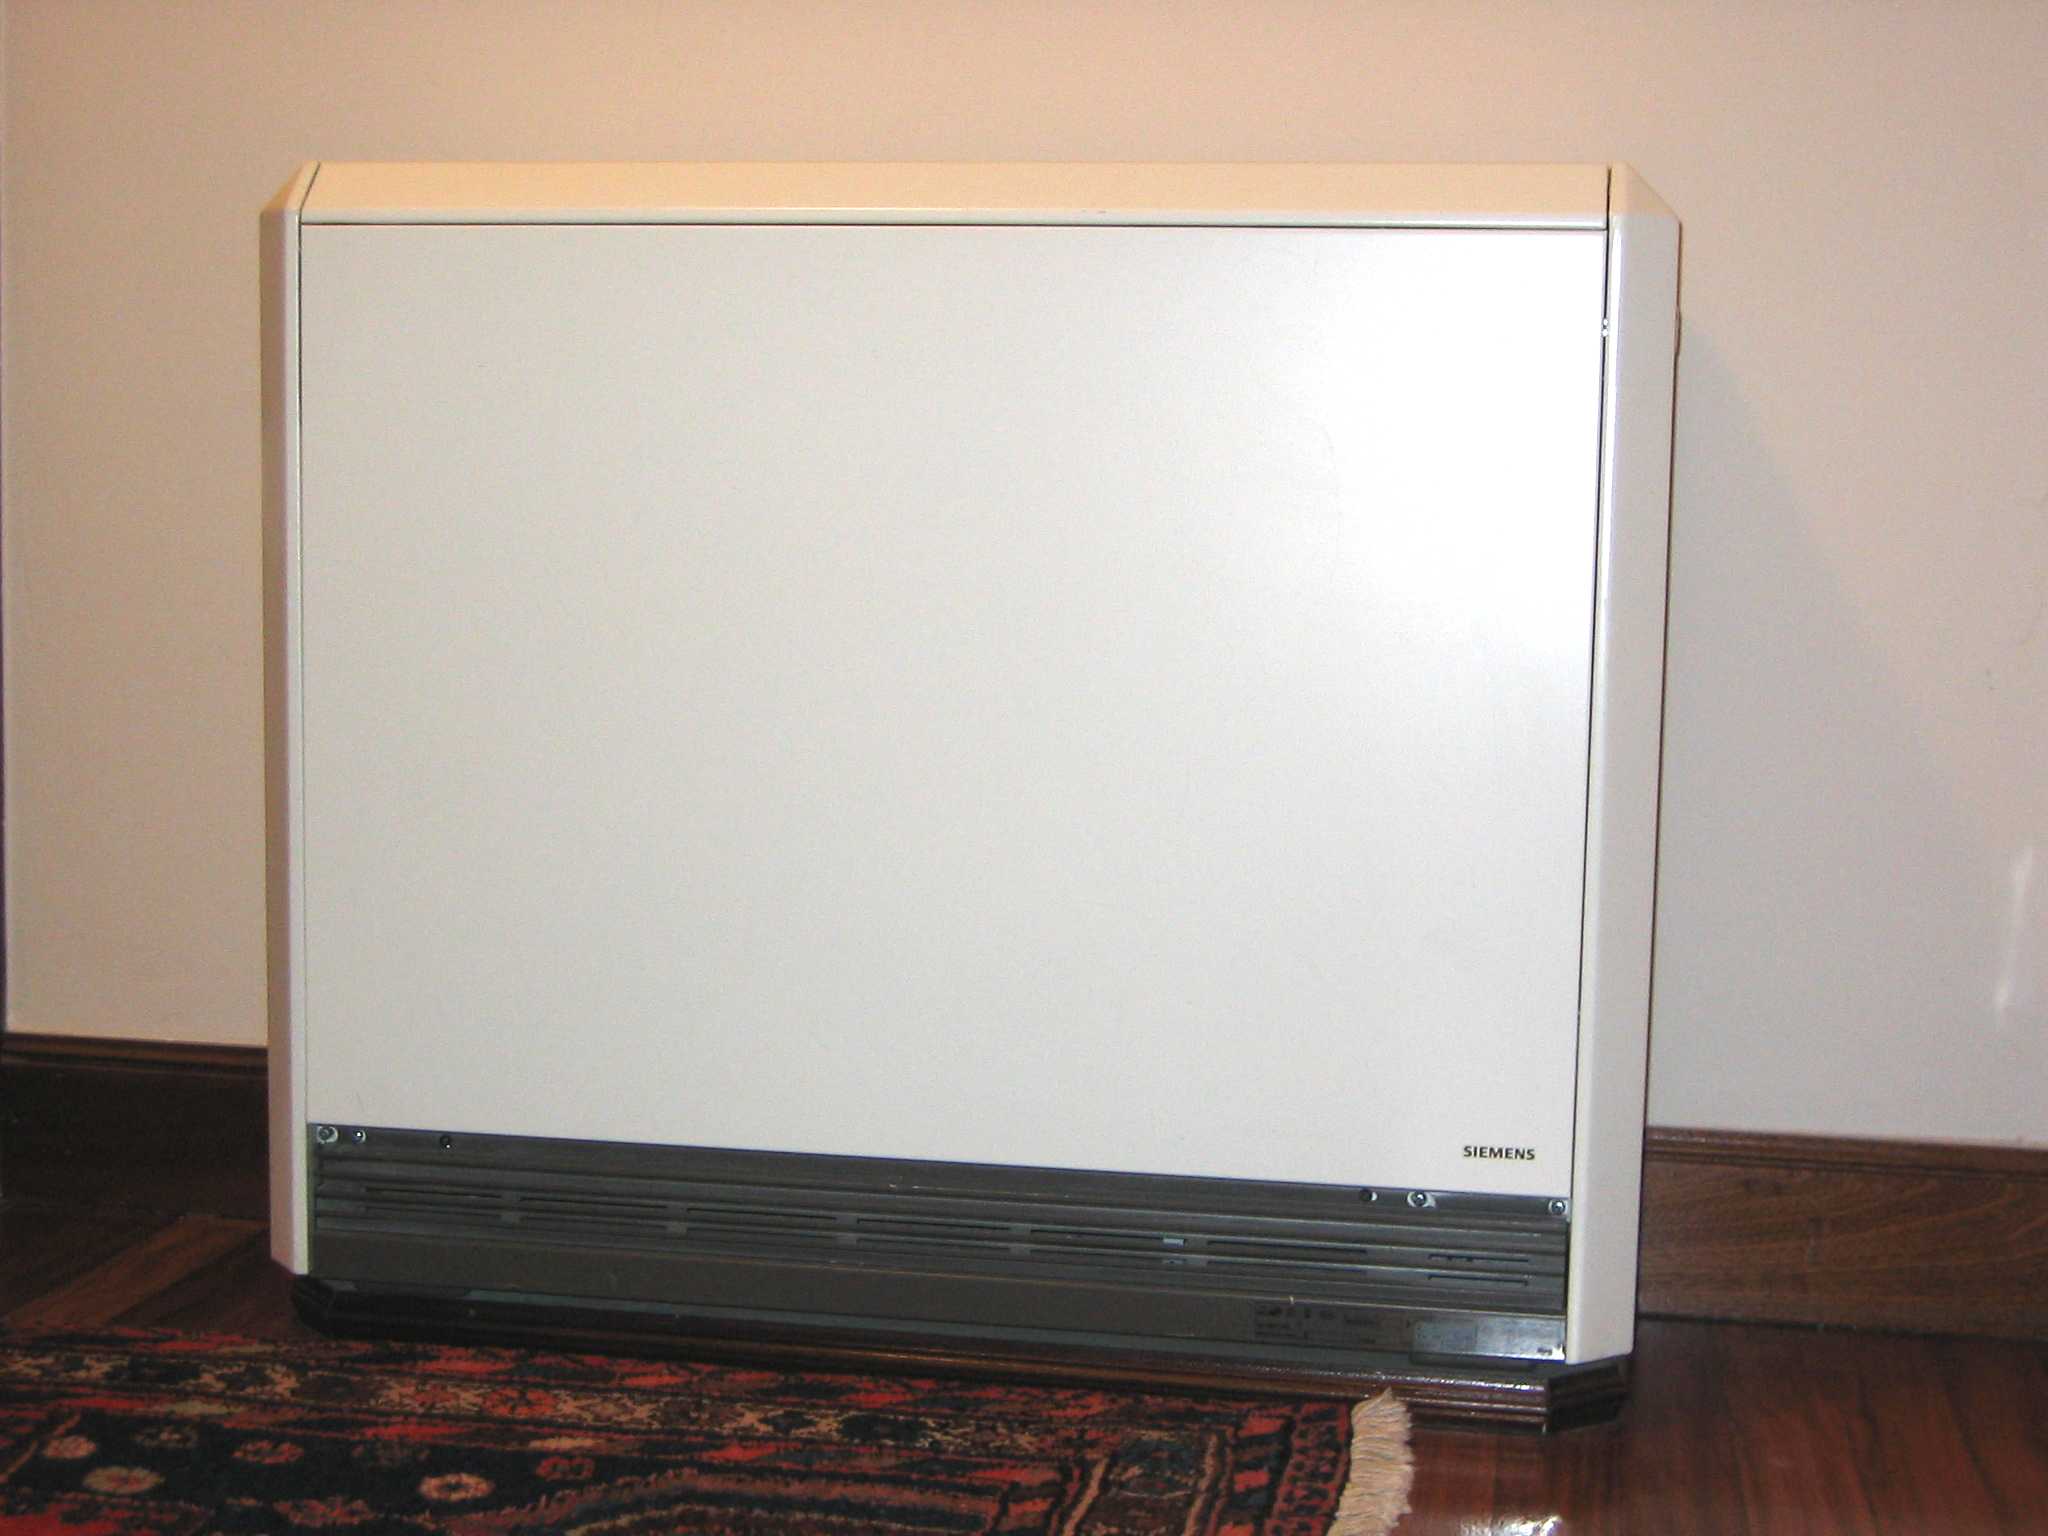 Acumulador de calor (calefacción) - Wikipedia, la enciclopedia libre